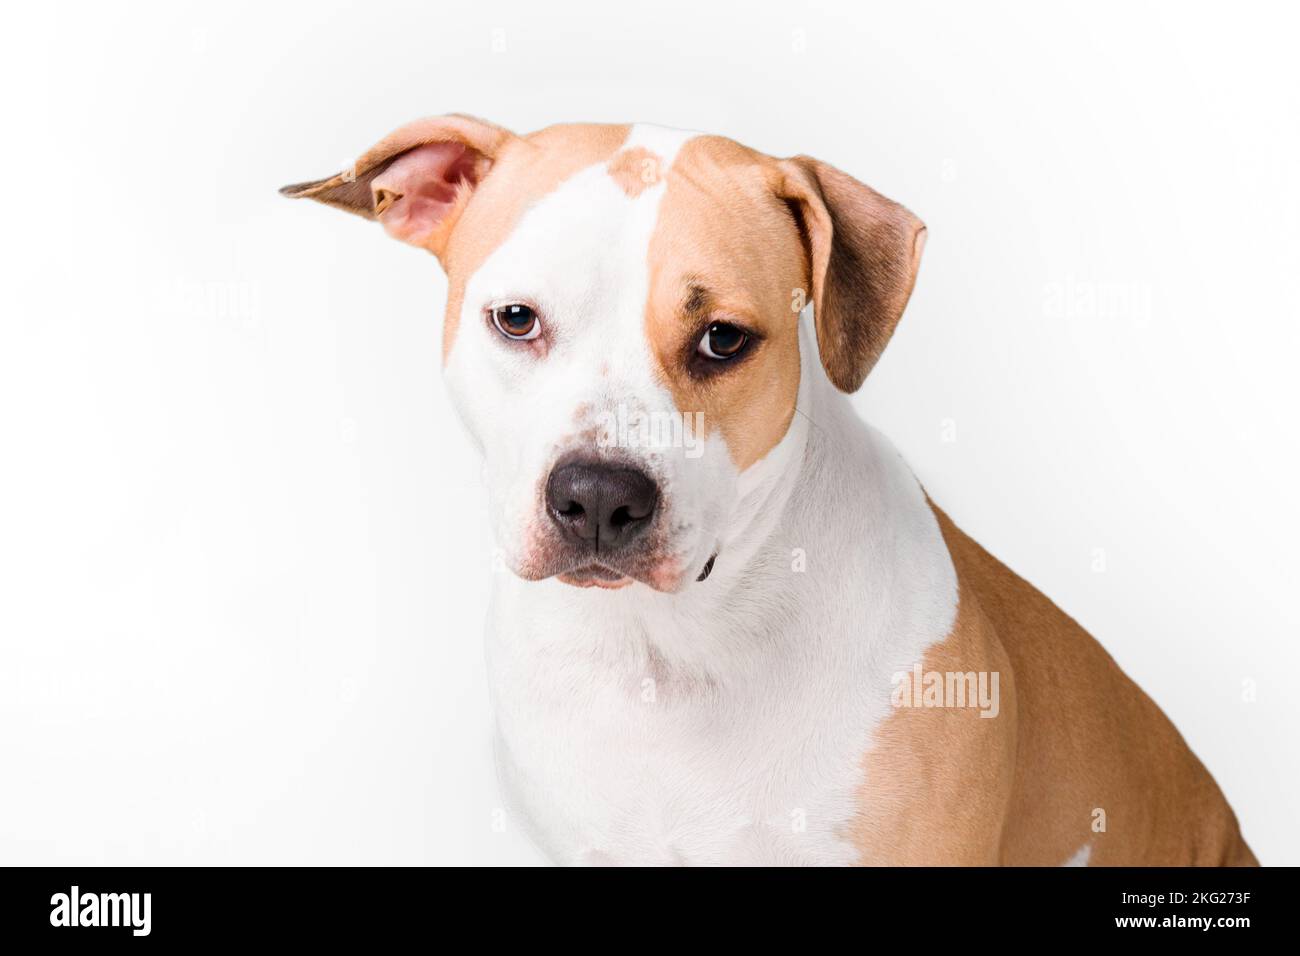 Cane americano Staffordshire Terrier isolato su sfondo bianco Foto Stock